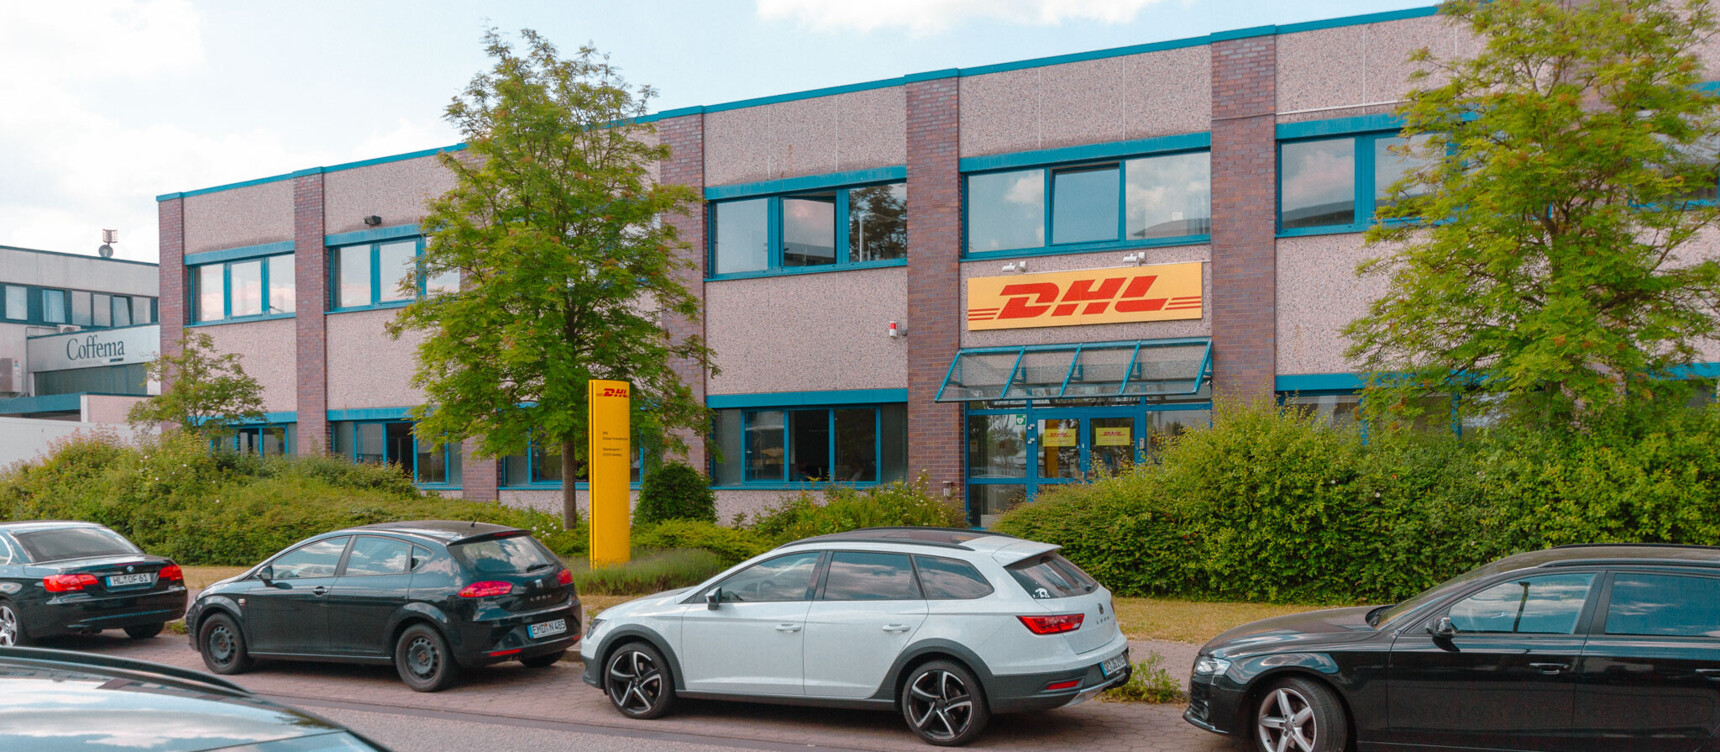 Sitz von DHL am Standort südliches Flughafenumfeld